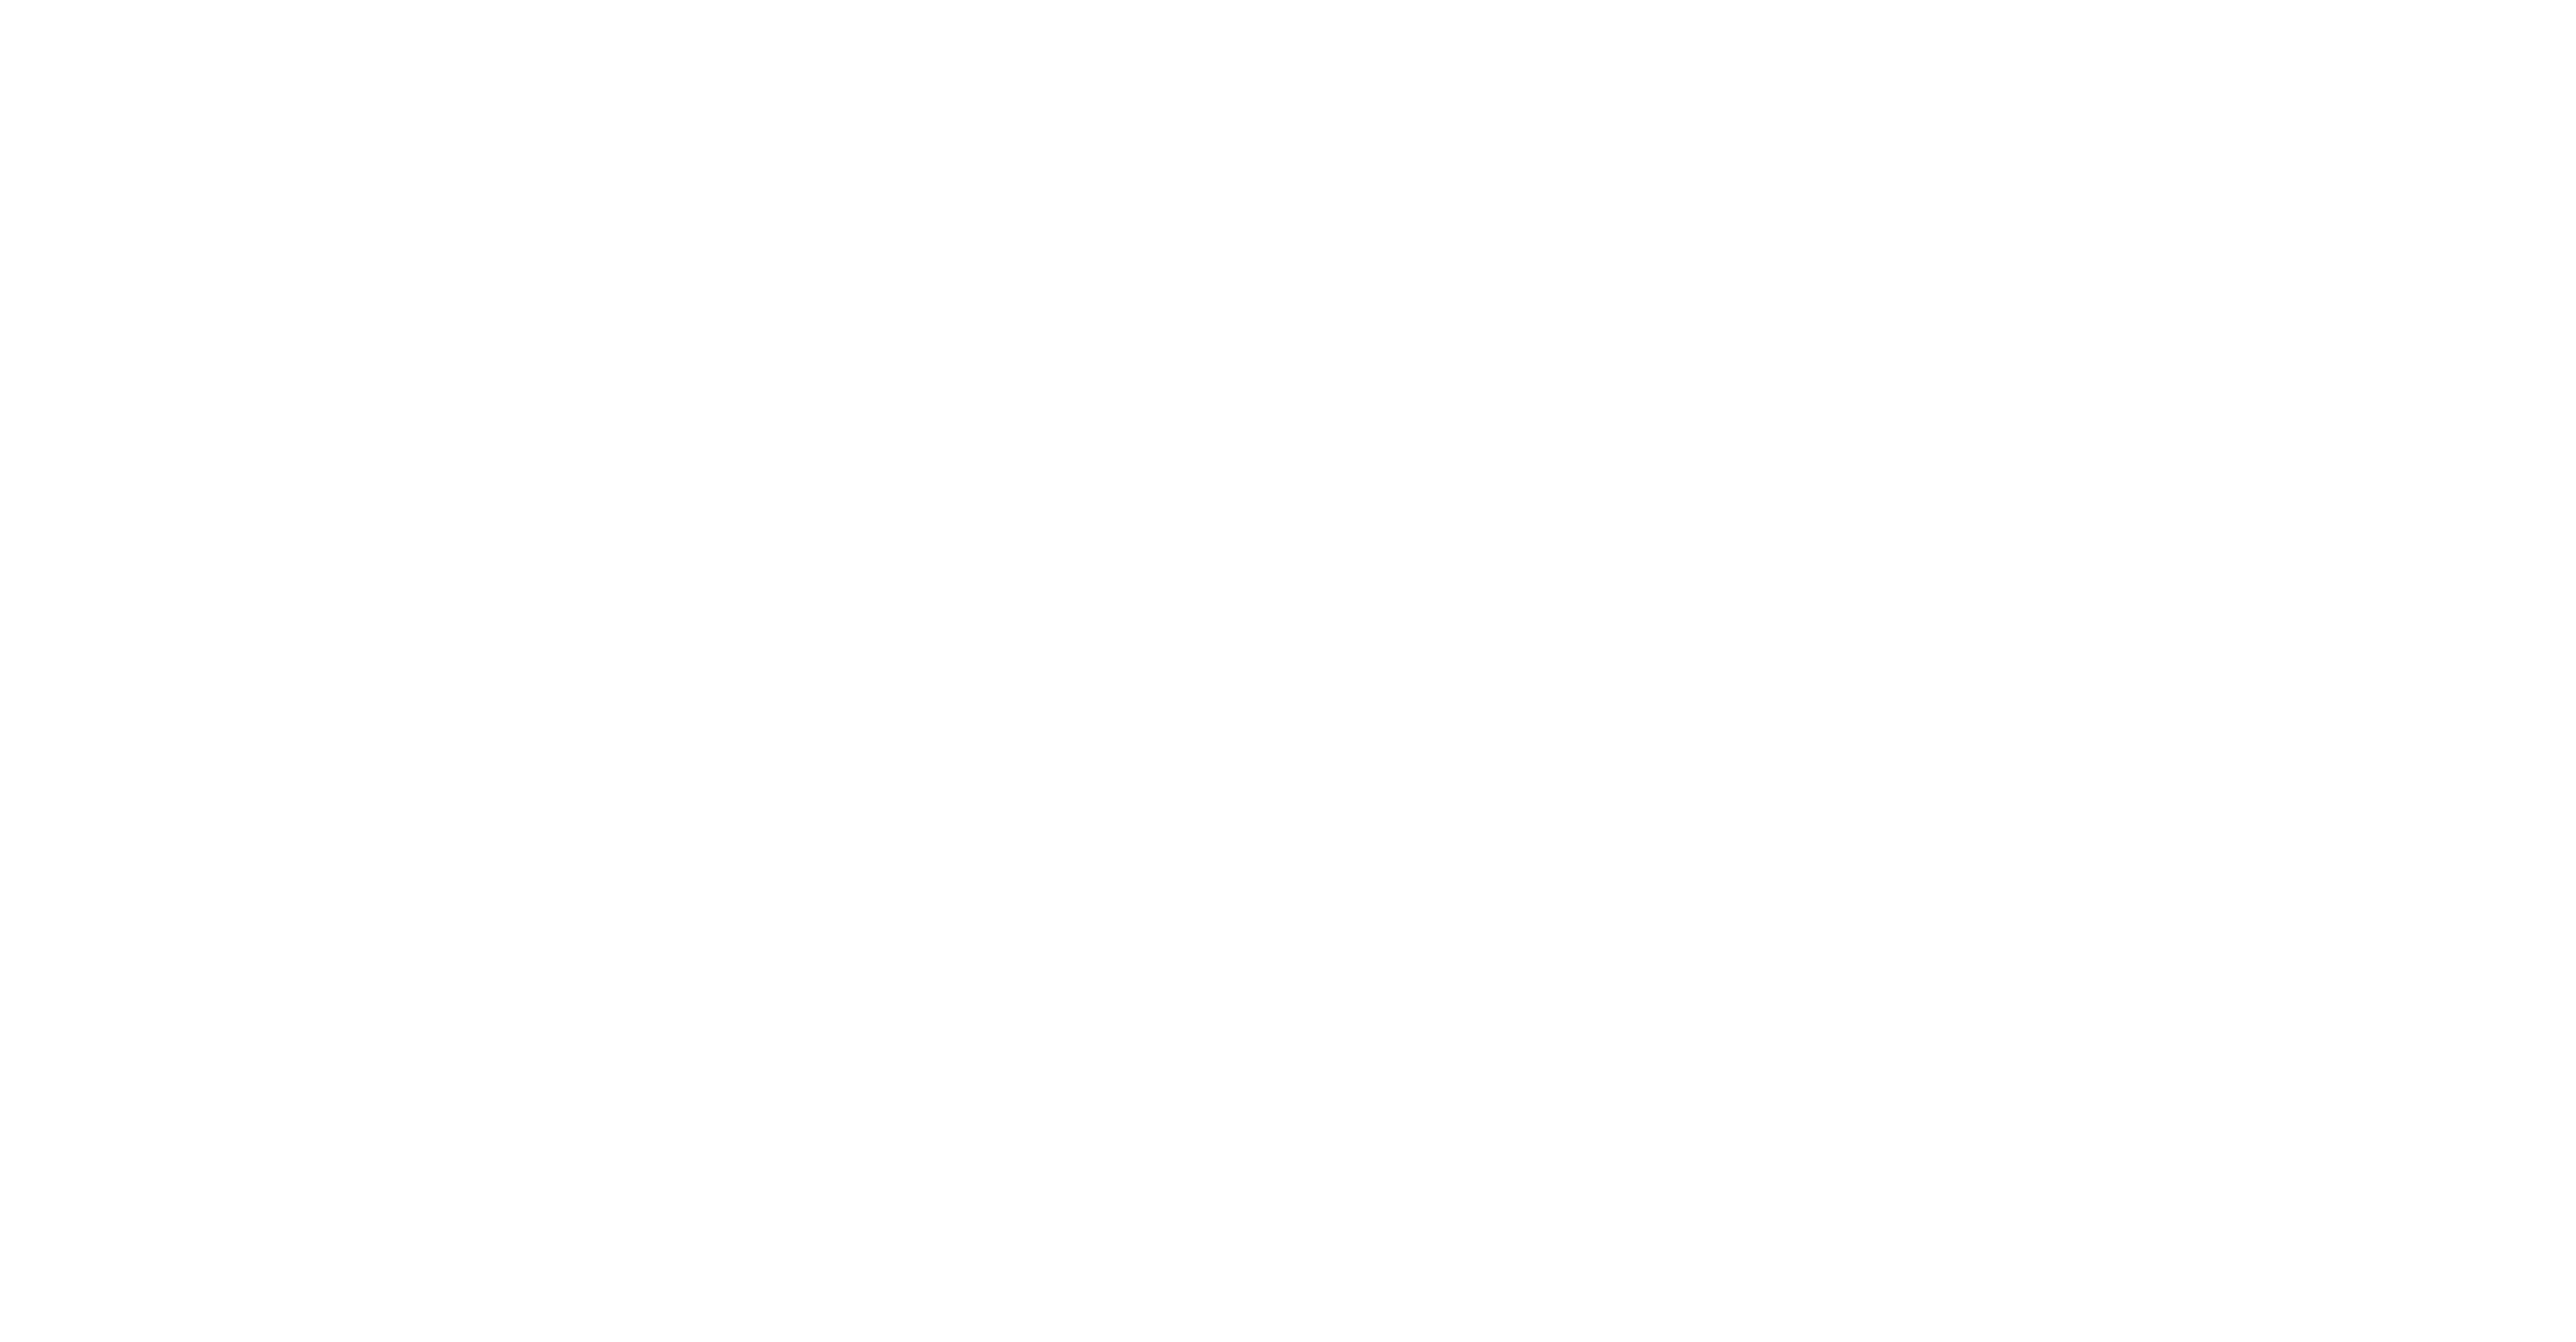 Eclectia on white with cauldron logo to the left.